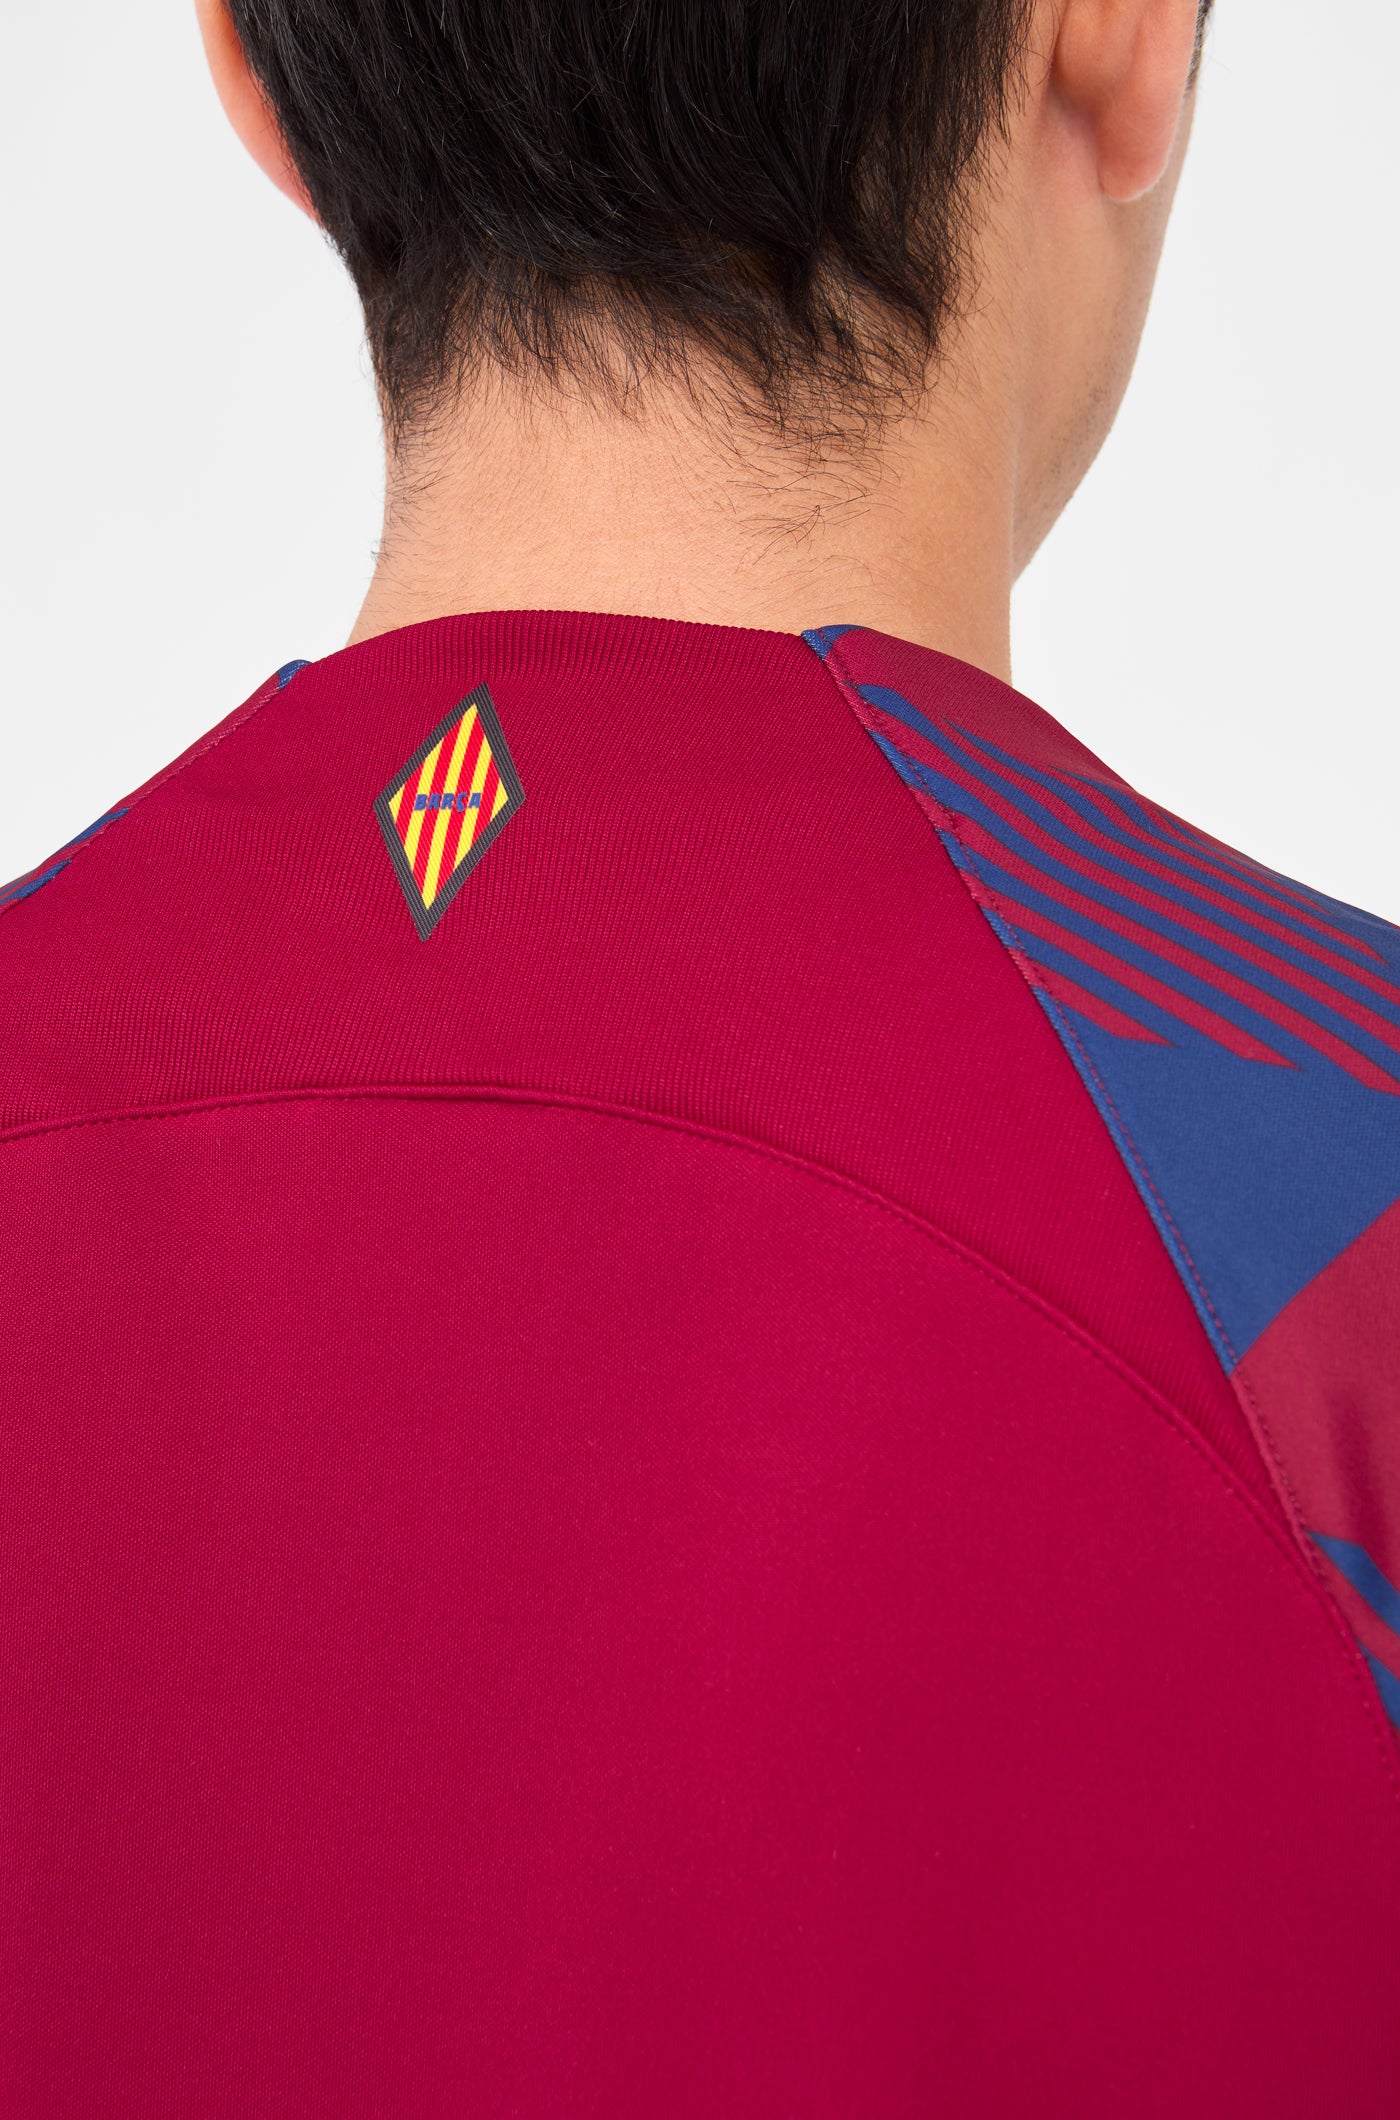 Jaqueta prepartit primer equipament FC Barcelona 23/24